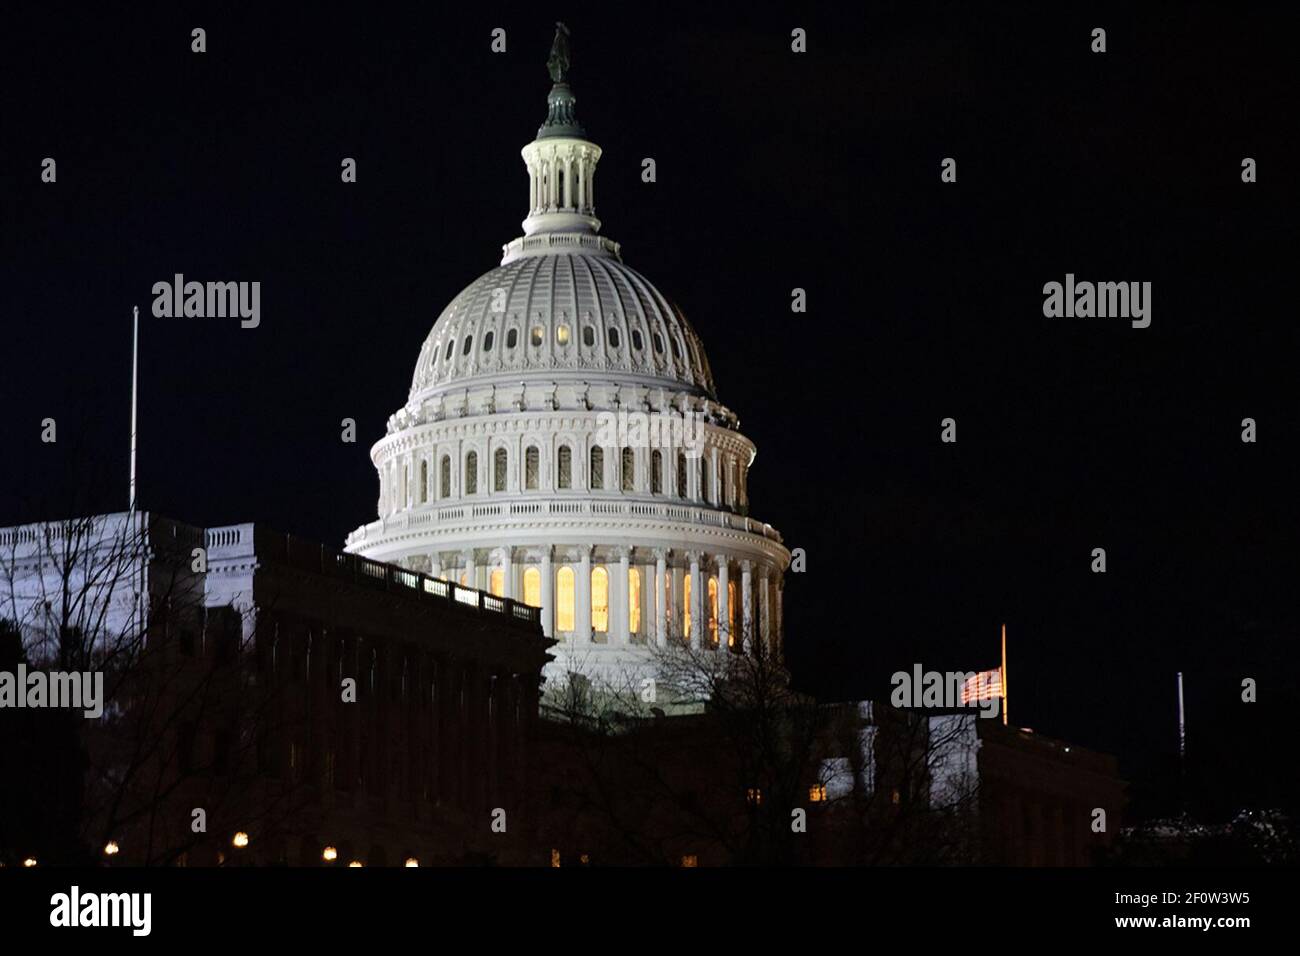 Die US-Flagge fliegt auf Half-Staff außerhalb des US-Kapitols Montag Abend 3 2018. Dezember als ehemaliger Präsident George H. W. Bush liegt im Zustand in der Rotunde des US-Kapitols in Washington D.C. Stockfoto